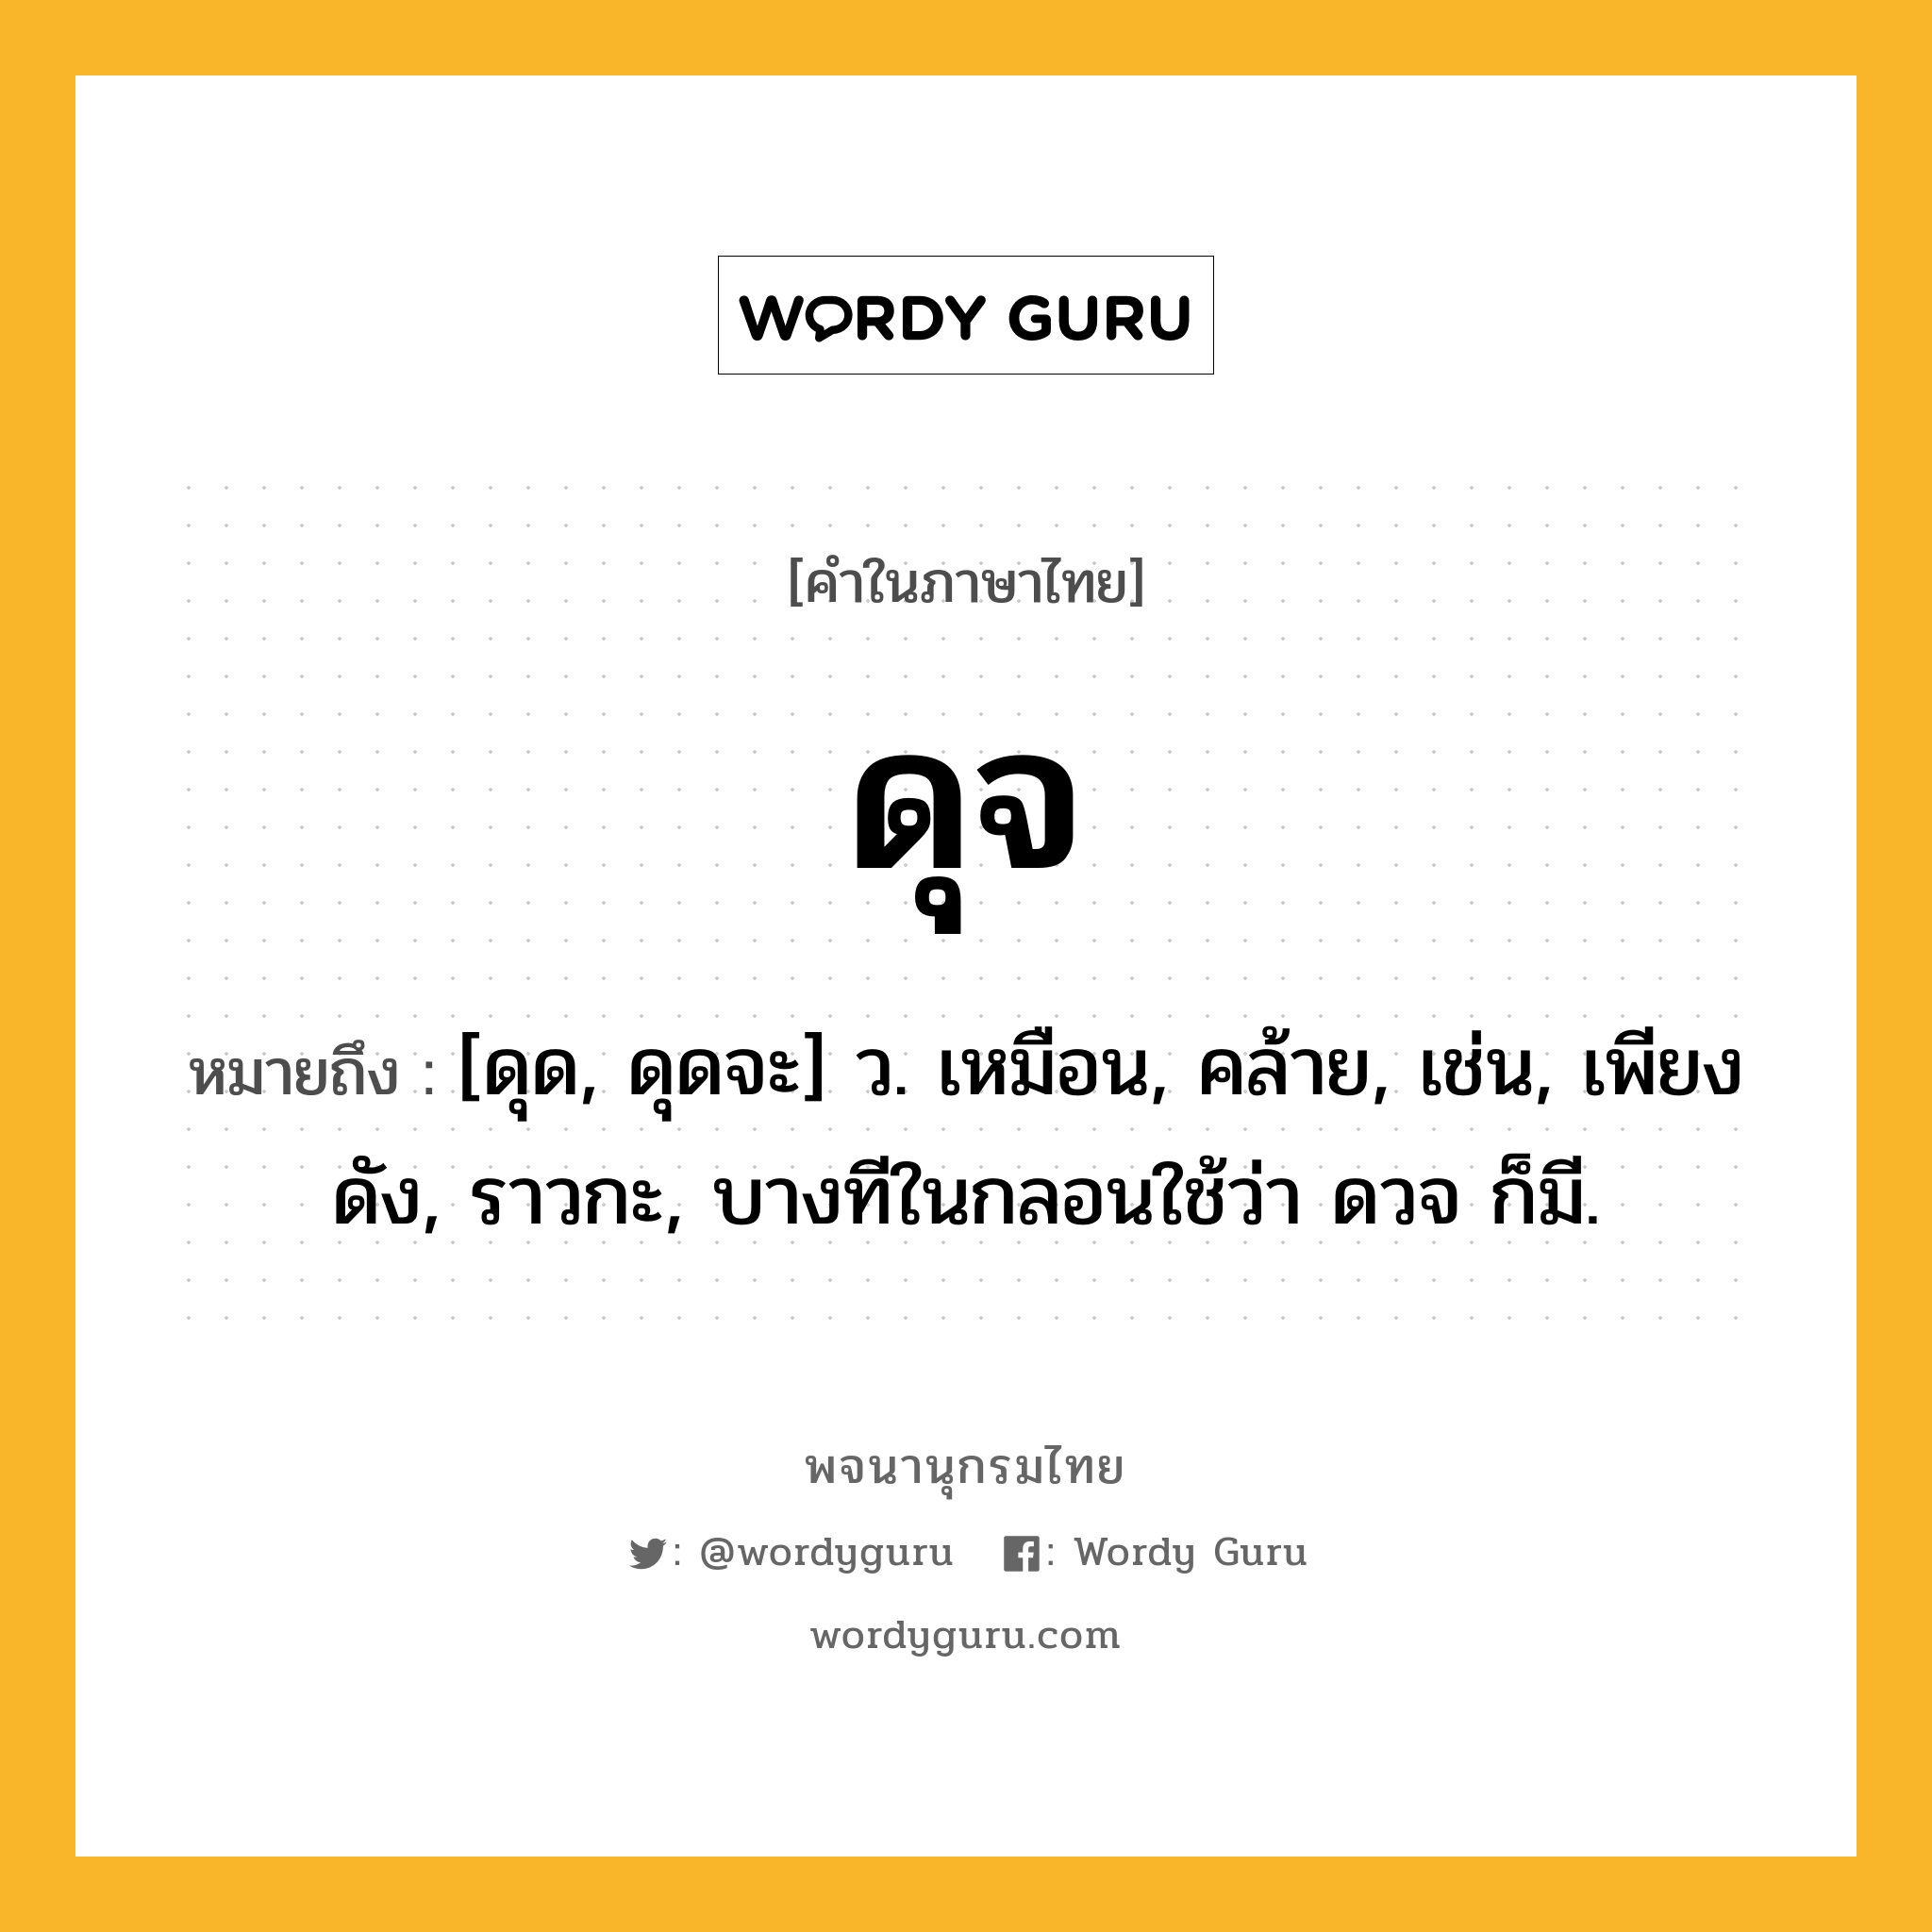 ดุจ ความหมาย หมายถึงอะไร?, คำในภาษาไทย ดุจ หมายถึง [ดุด, ดุดจะ] ว. เหมือน, คล้าย, เช่น, เพียงดัง, ราวกะ, บางทีในกลอนใช้ว่า ดวจ ก็มี.